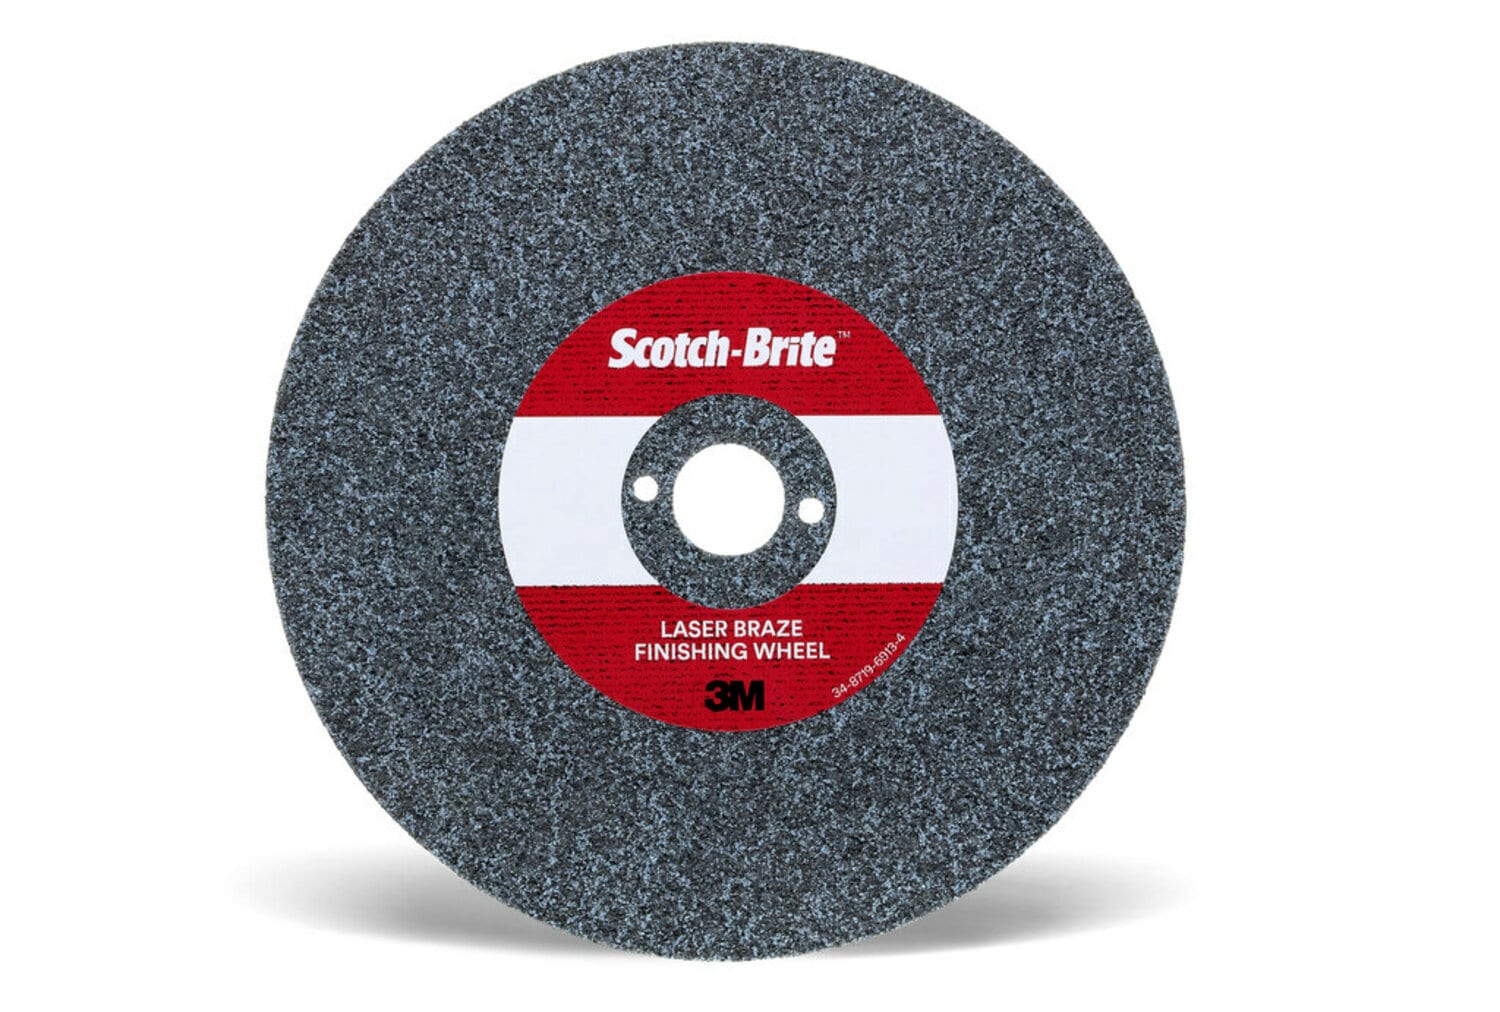 7100115789 - Scotch-Brite Laser Braze Finishing Wheel, 9 in x 3.2mm x 1-1/4 in, 10
ea/Case